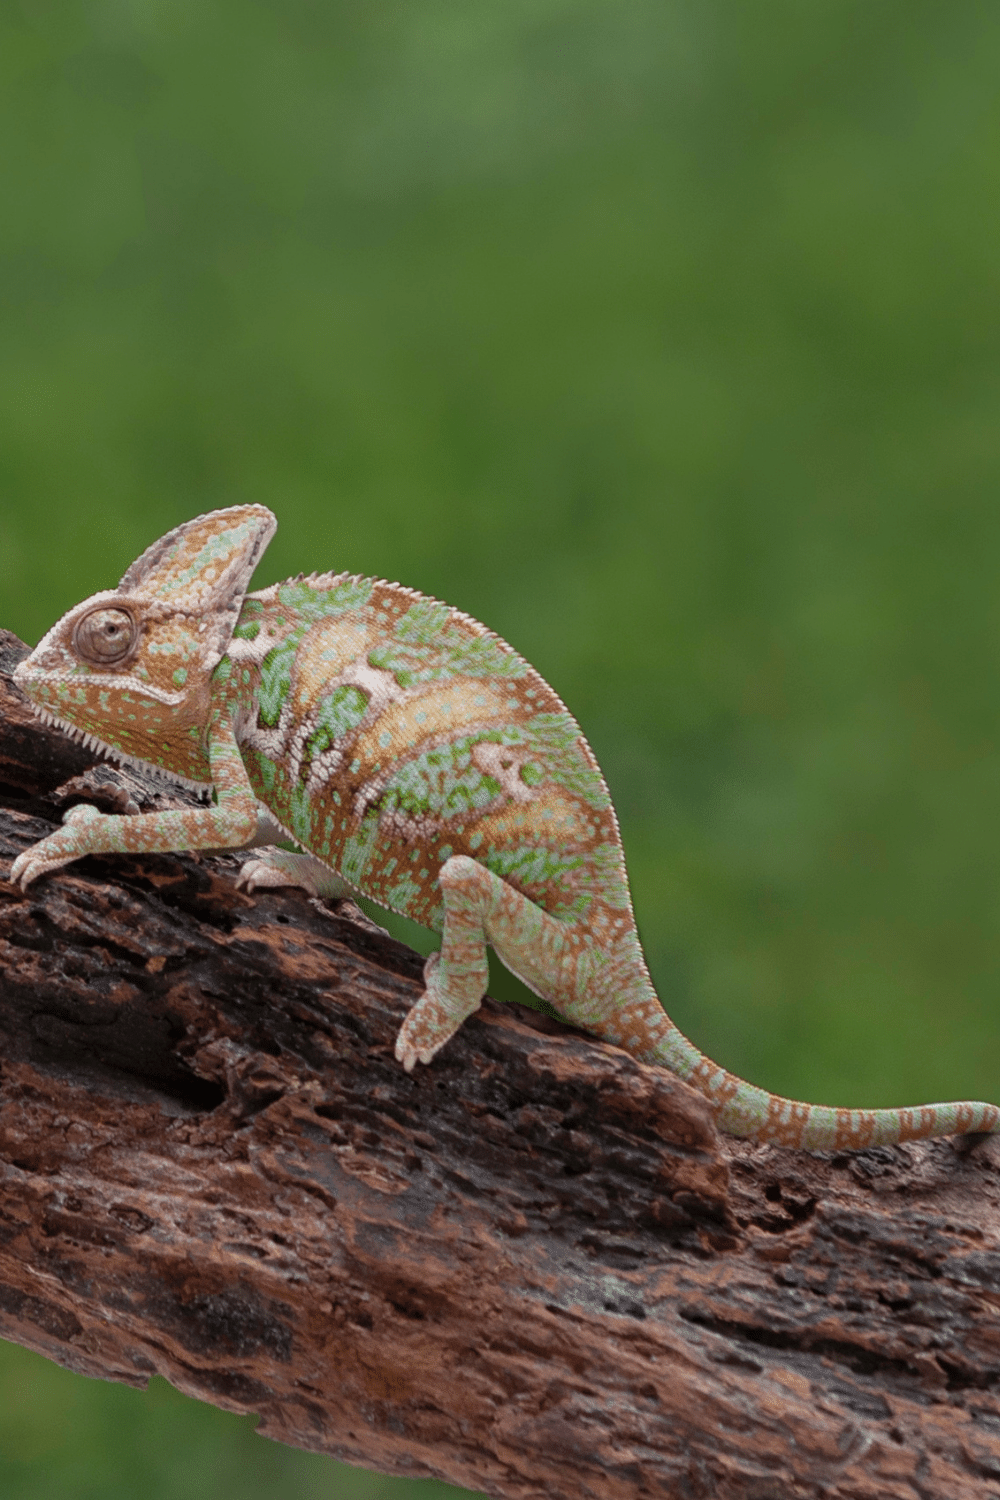 Juvenile Veiled Chameleons